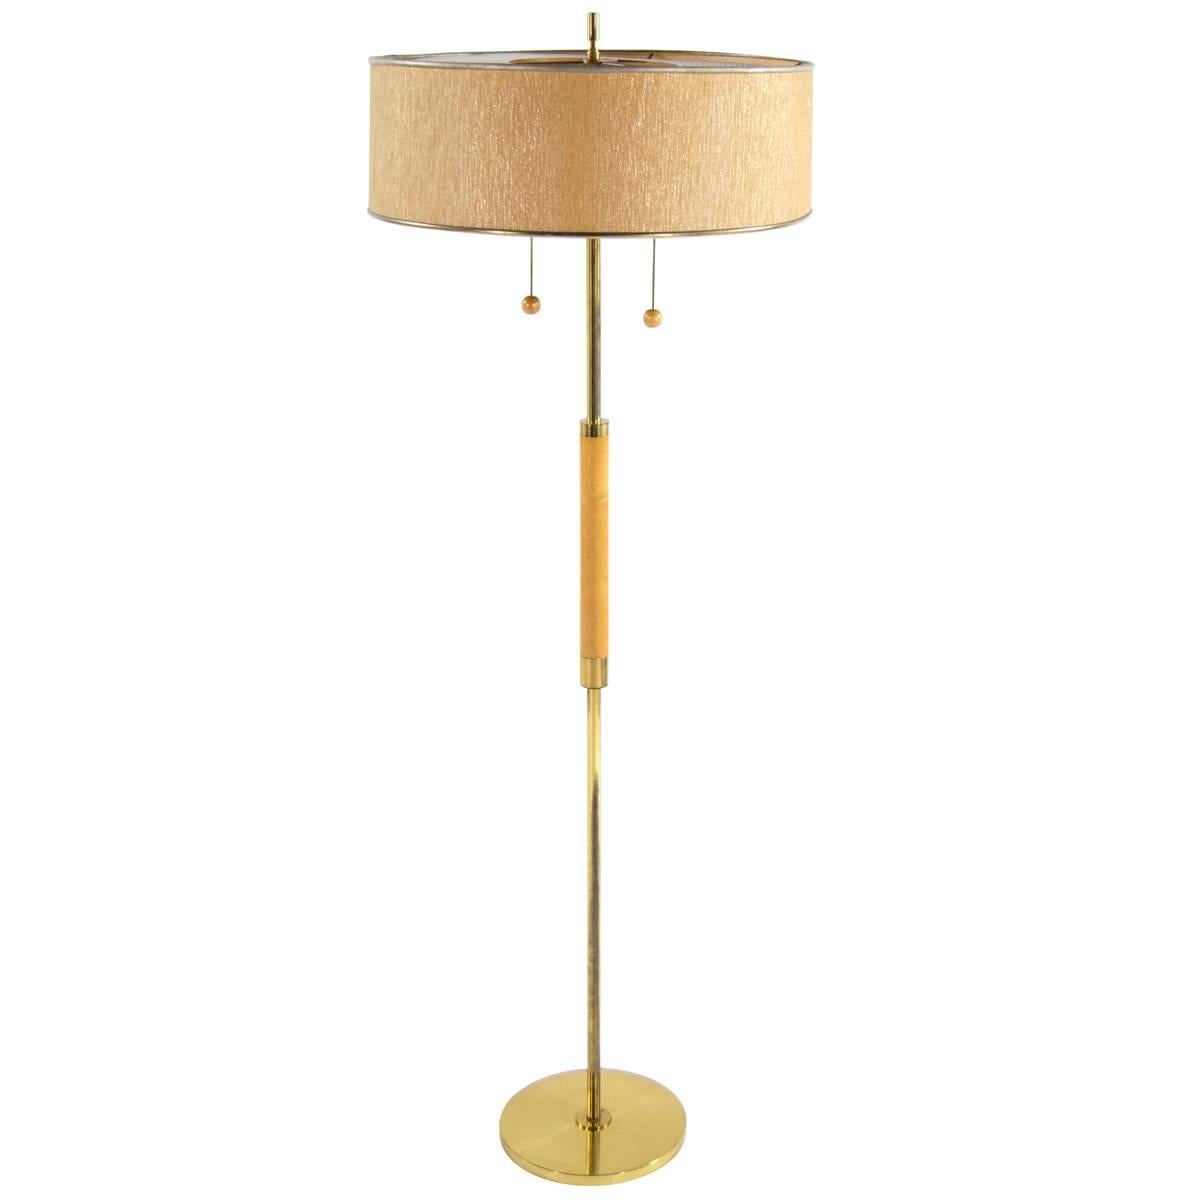 Gerald Thurston for Lightolier Brass Floor Lamp